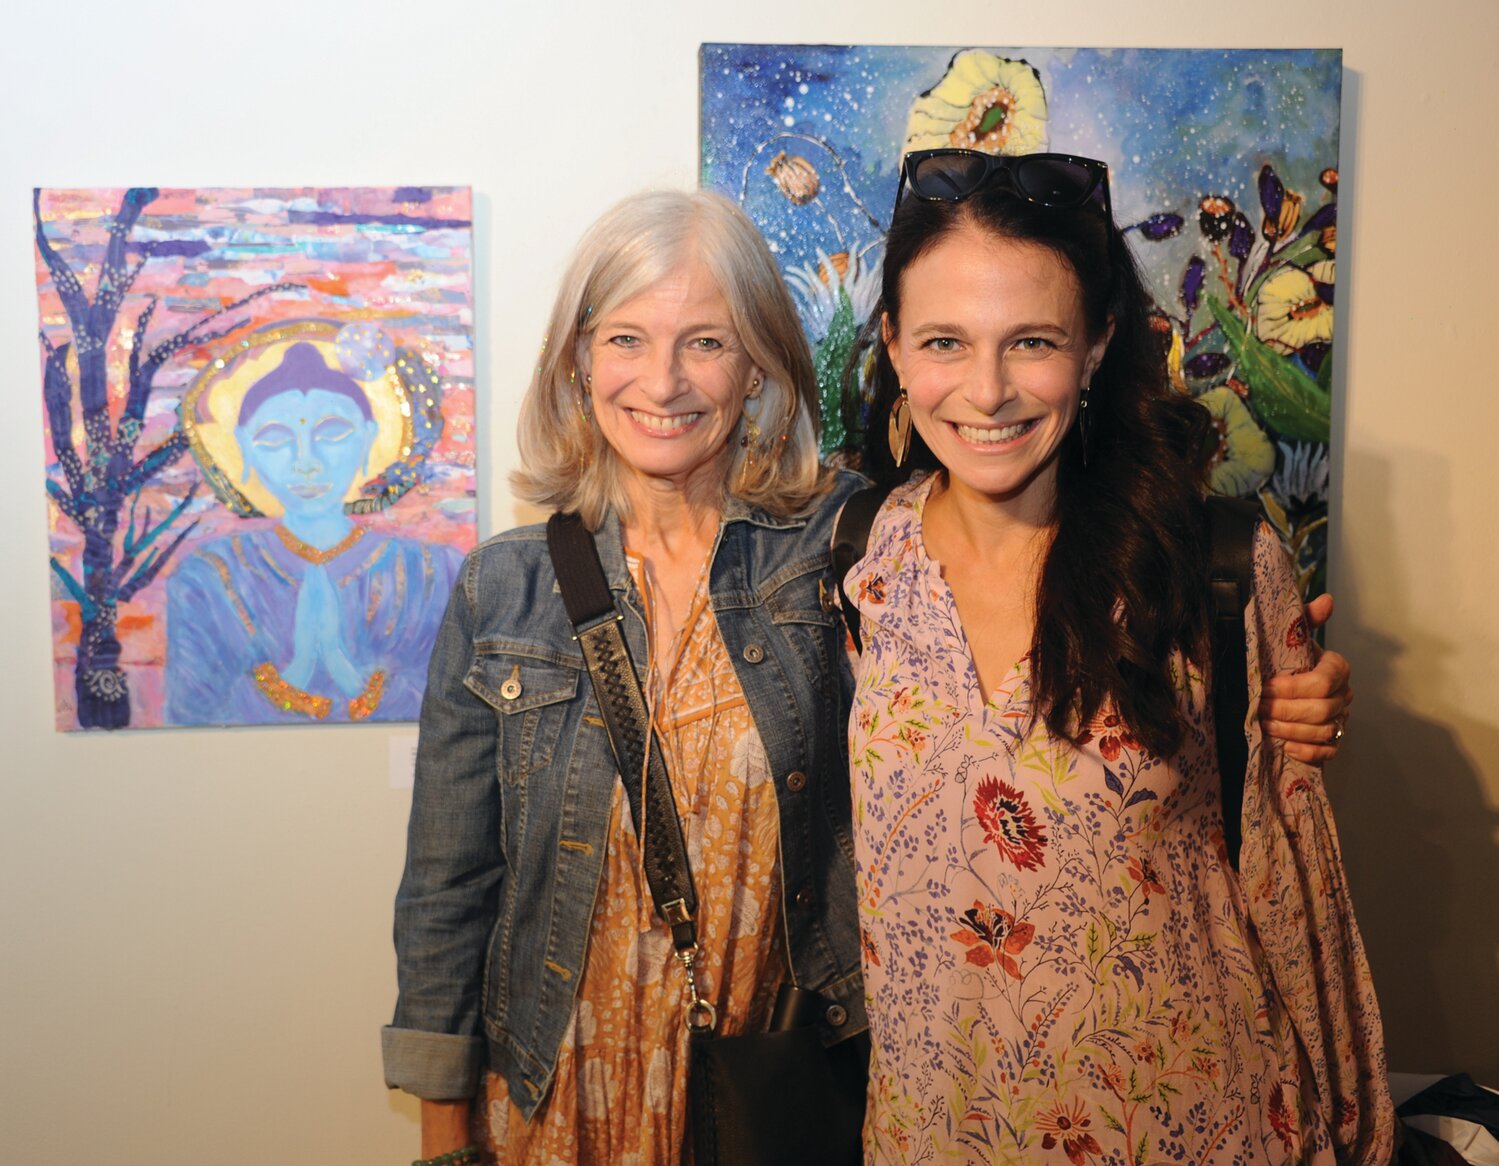 Artist Karen Engelmeyer with her work “Wings of the Heart” and daughter Katy Corrigan.